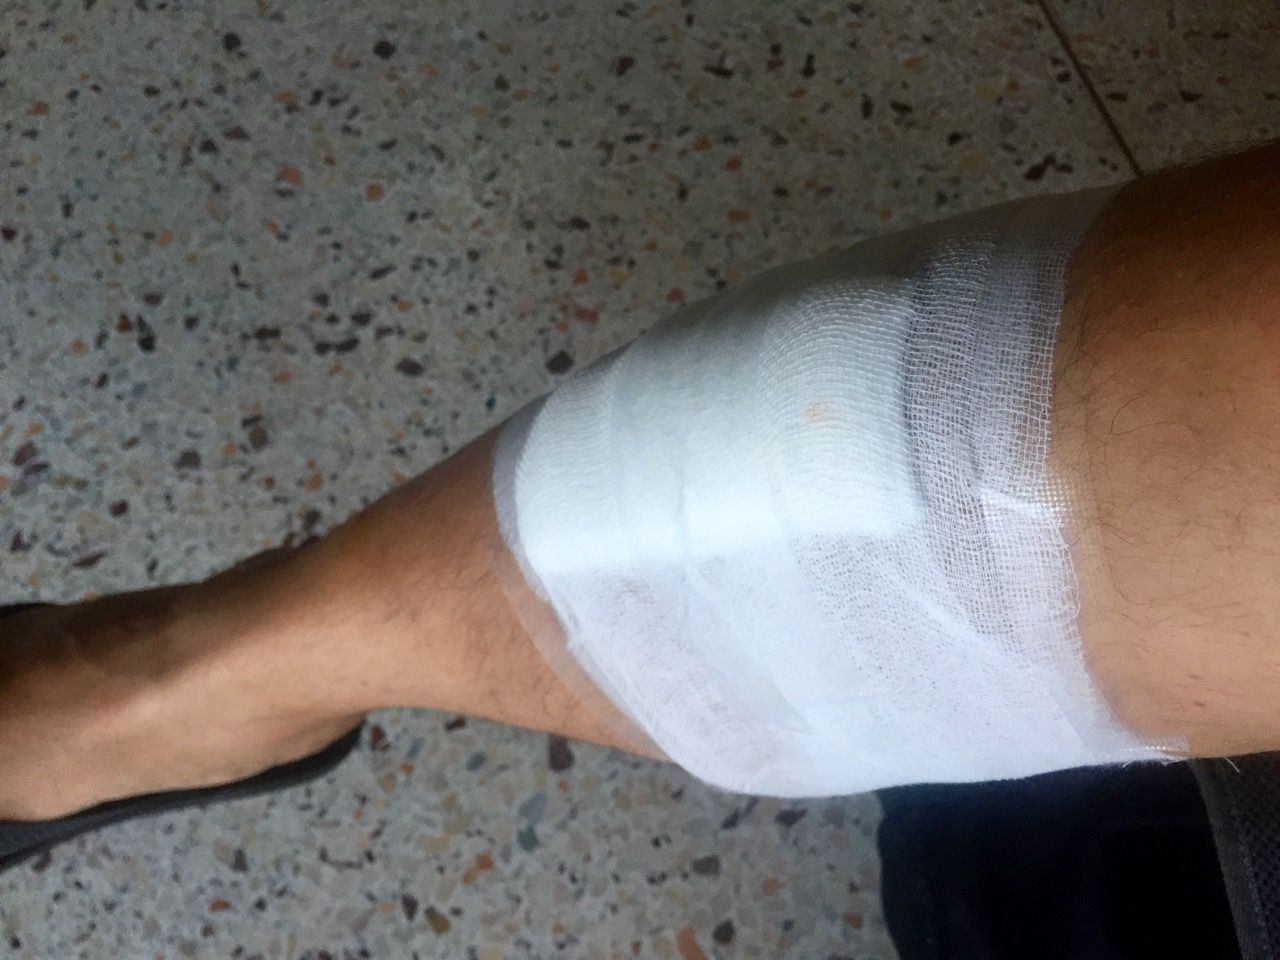 Bandaged leg.